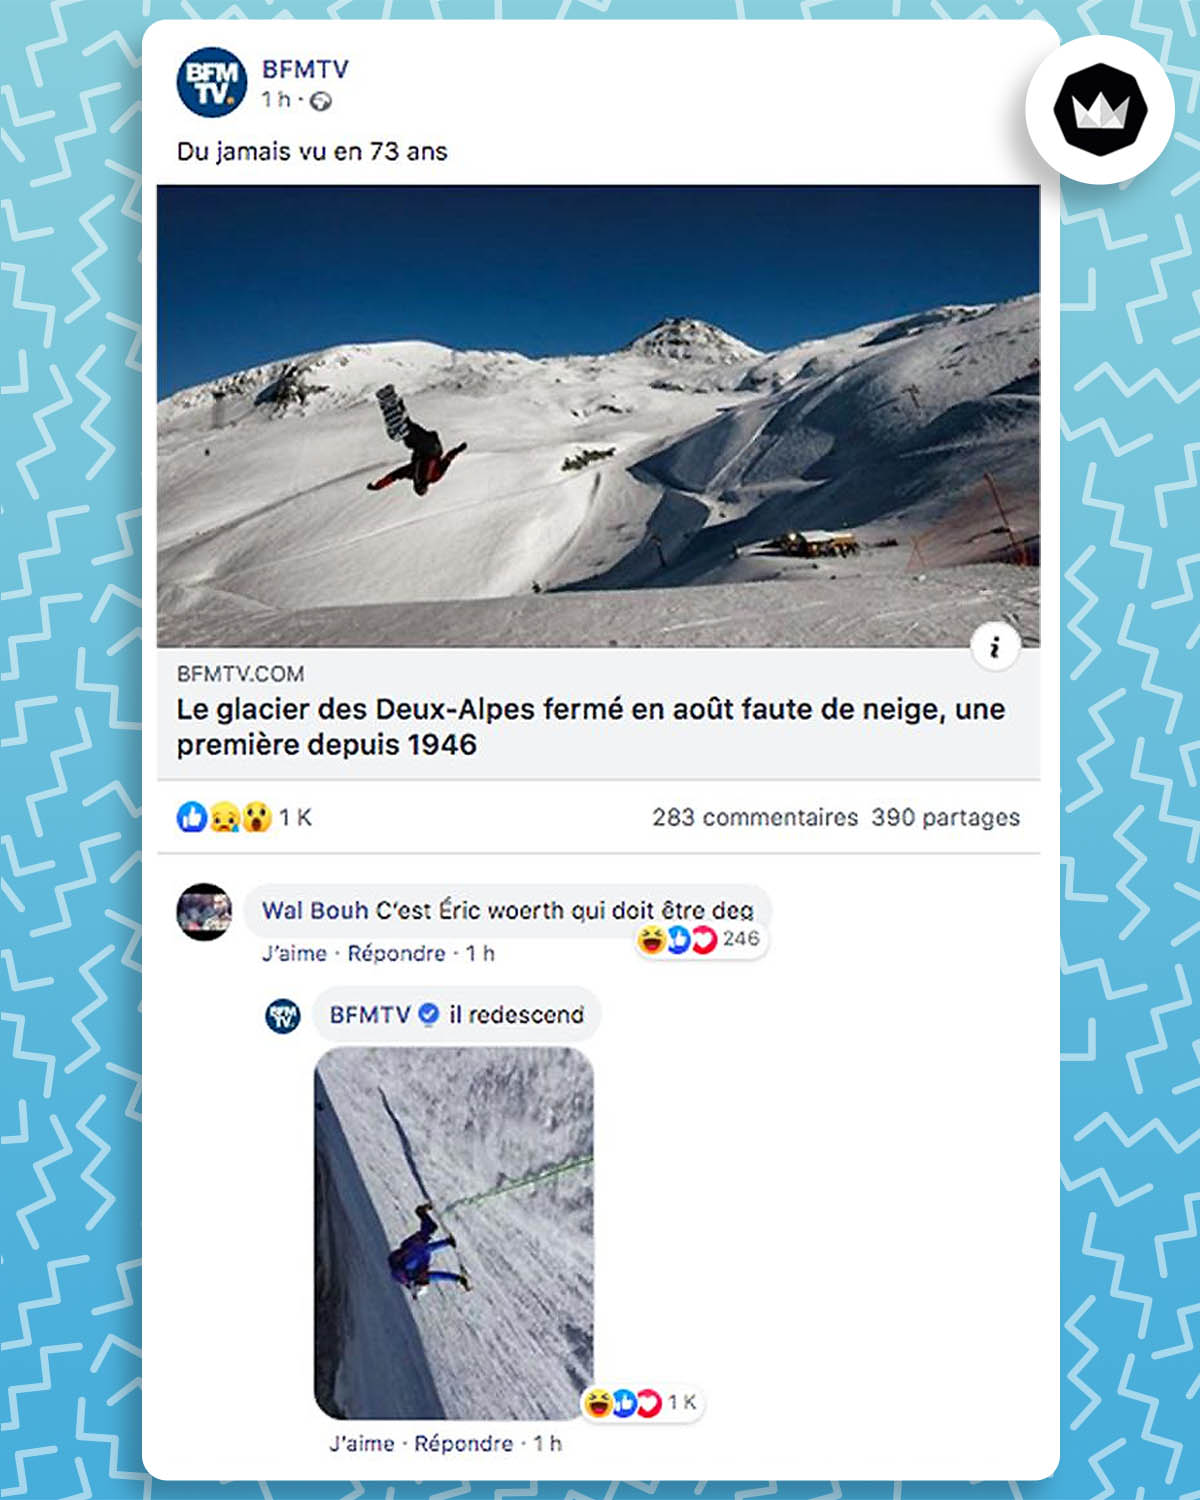 BFMTV partage un article sur Facebook : « Le glacier des Deux-Alpes fermé en août faute de neige, une première depuis 1946 ». Internaute qui commente : C’est Éric Woerth qui doit être deg. BFMTV : « il redescend », accompagné de la photo retournée d’Éric Woerth en train d’escalader l'aiguille d'Argentière et qui est devenue un meme. 